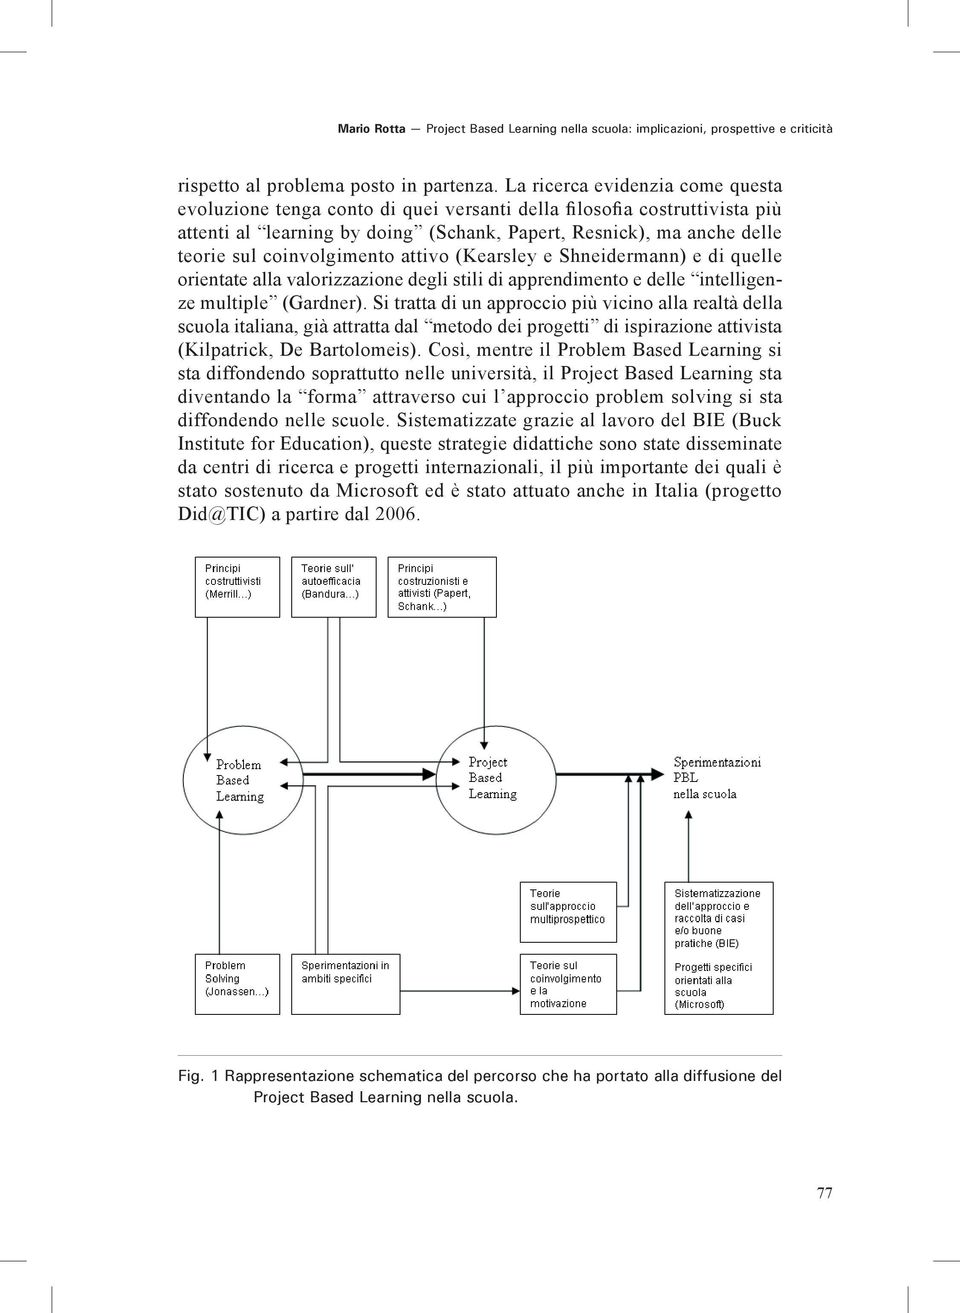 coinvolgimento attivo (Kearsley e Shneidermann) e di quelle orientate alla valorizzazione degli stili di apprendimento e delle intelligenze multiple (Gardner).